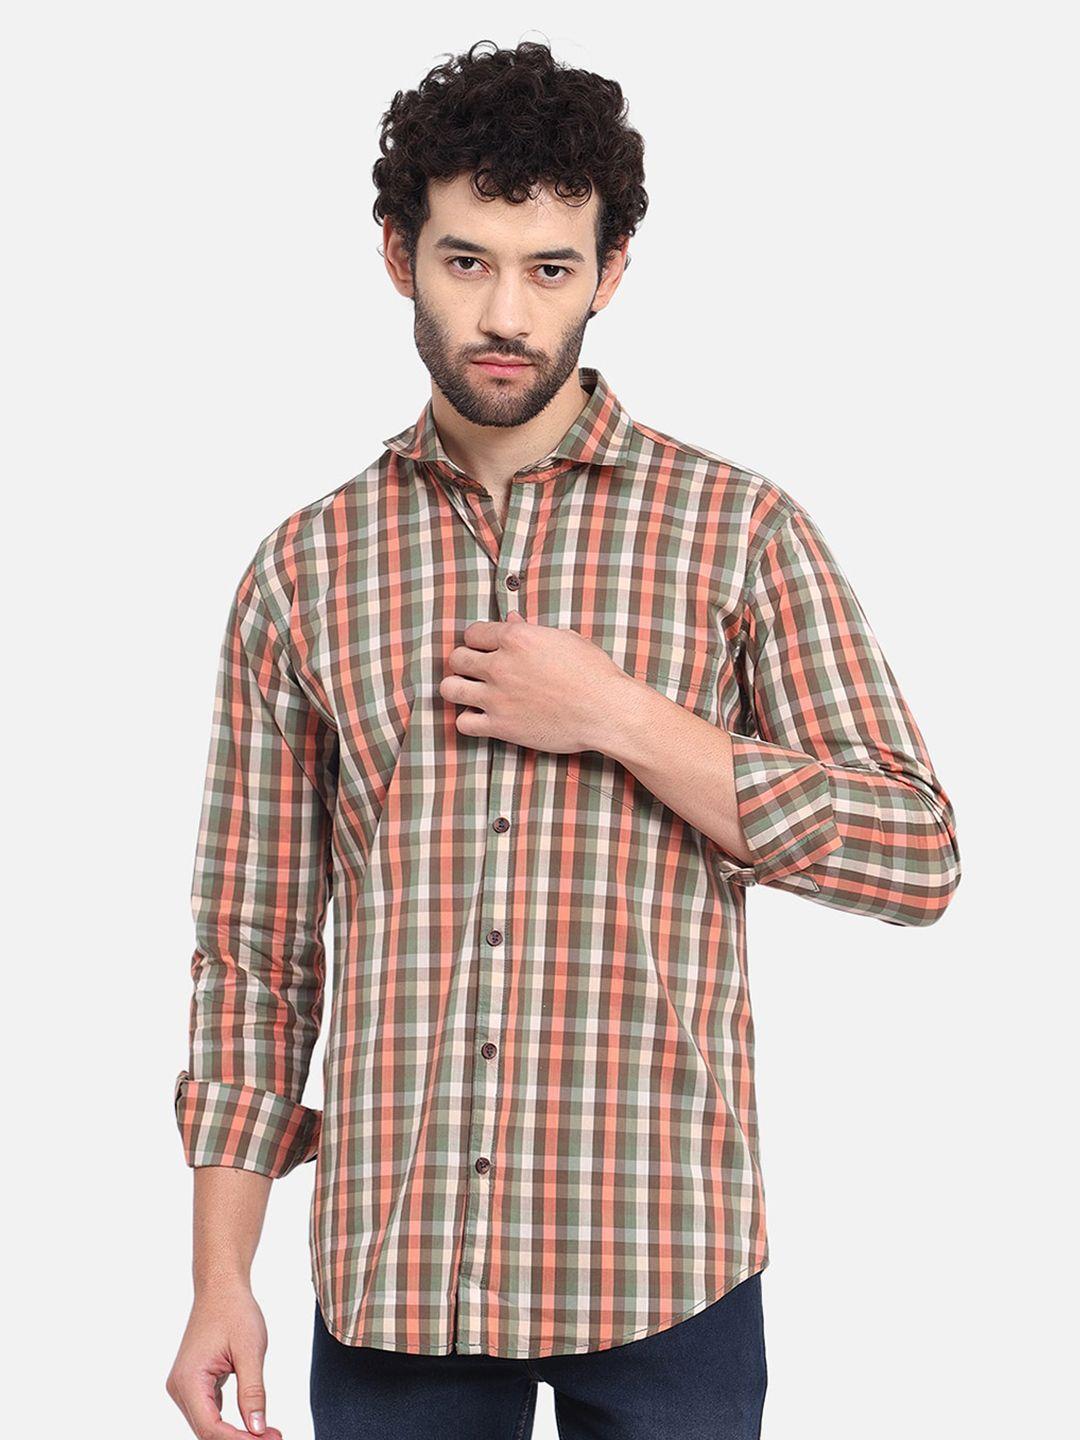 dezano-men-brown-modern-tartan-checks-opaque-checked-casual-shirt